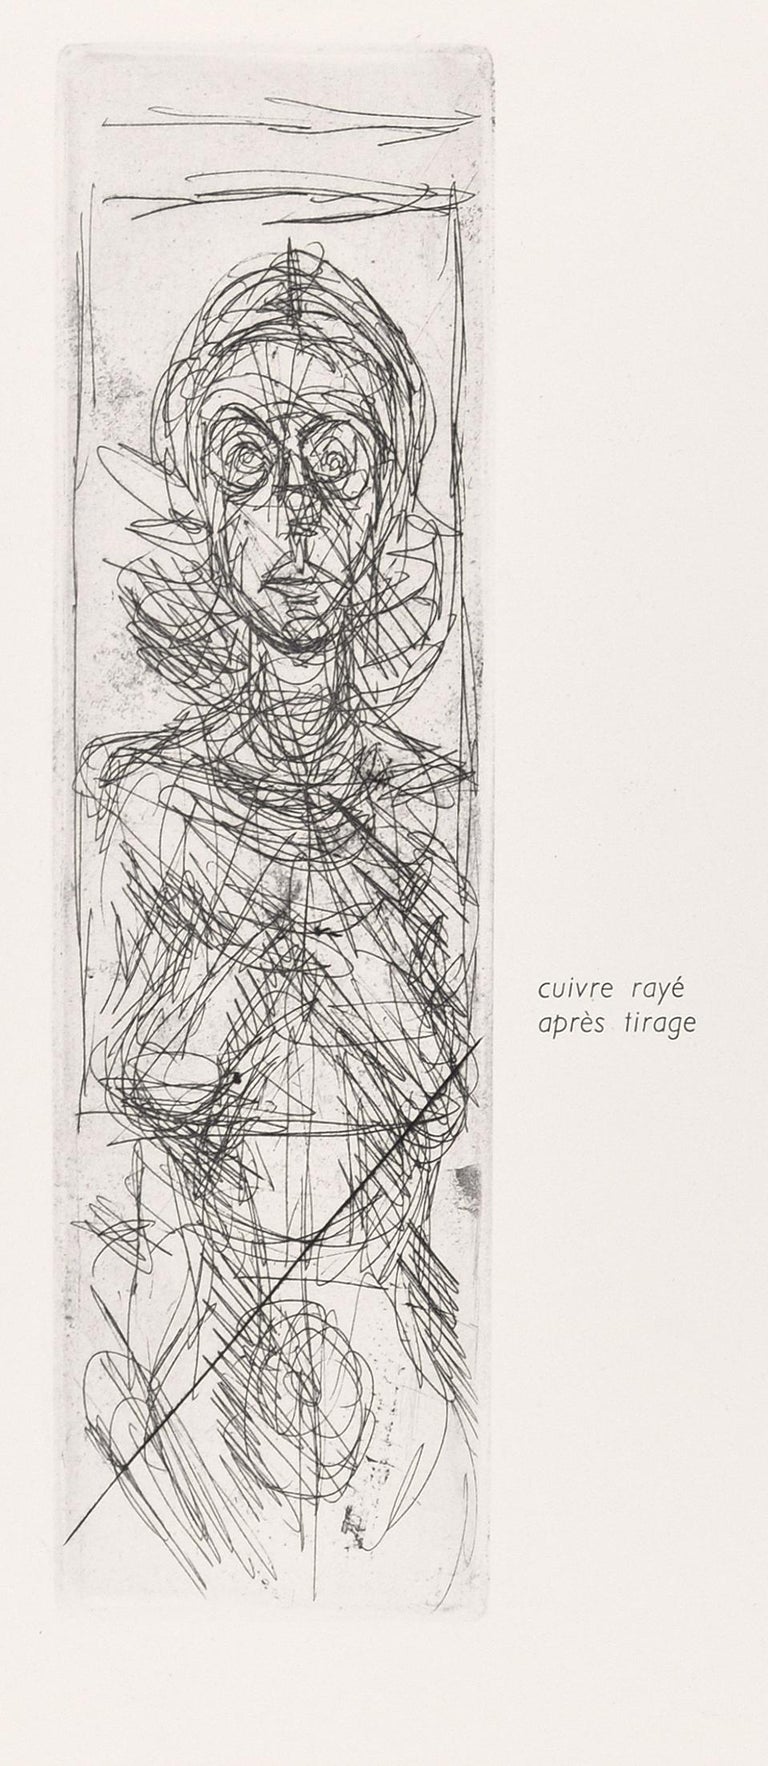 Lithograph Art Prints Alberto Giacometti for sale | eBay